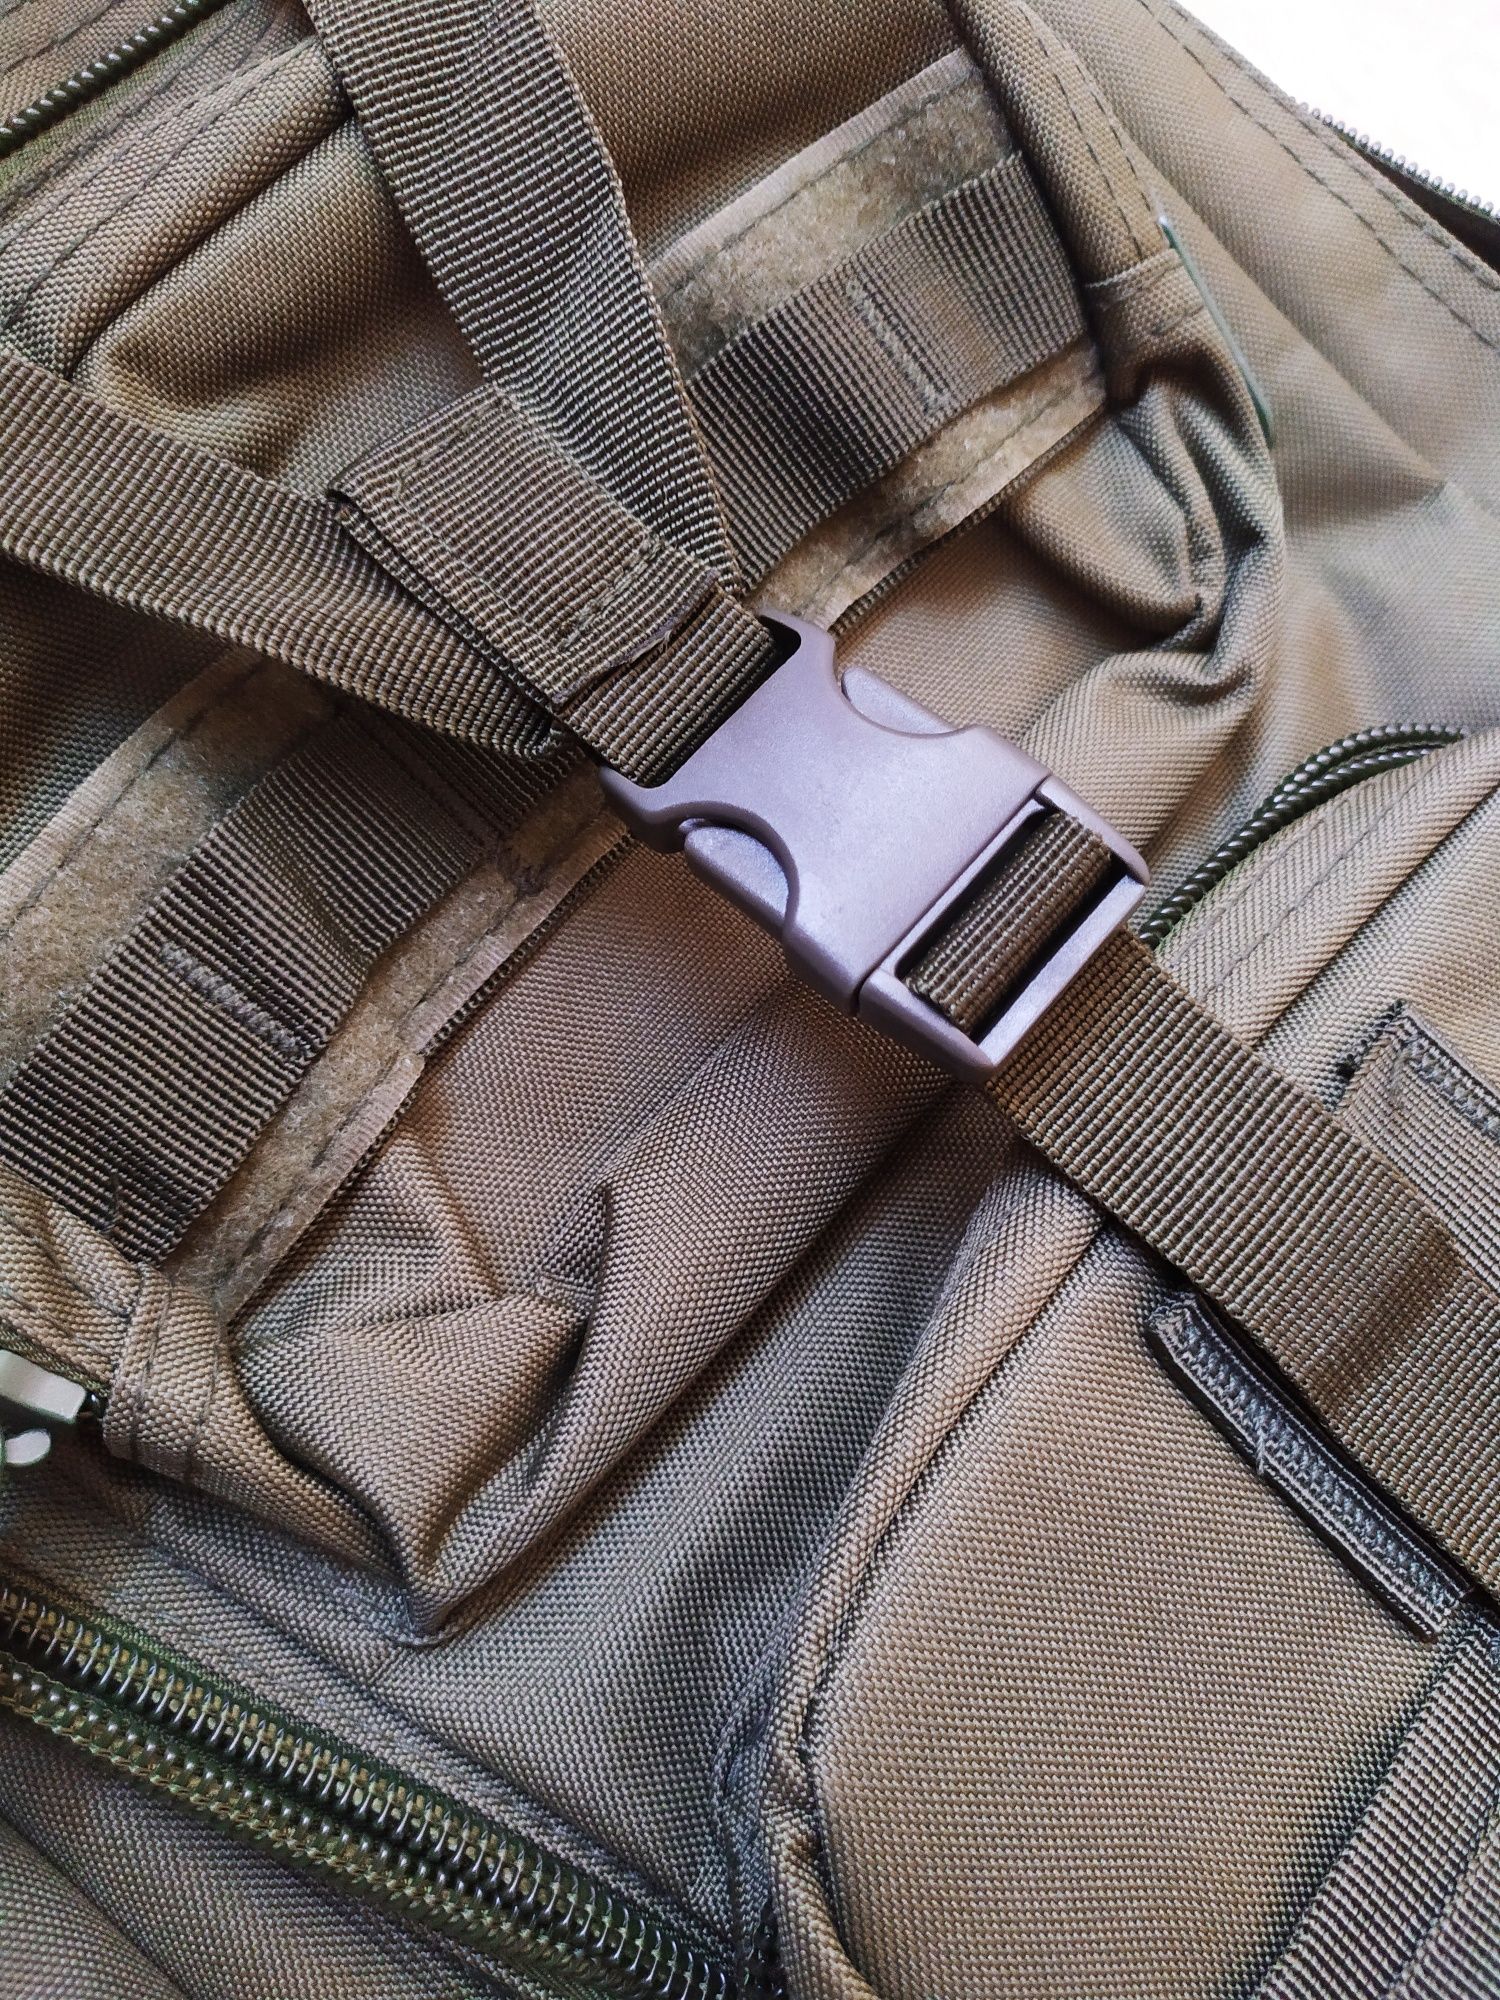 Plecak wojskowy, taktyczno szturmowy